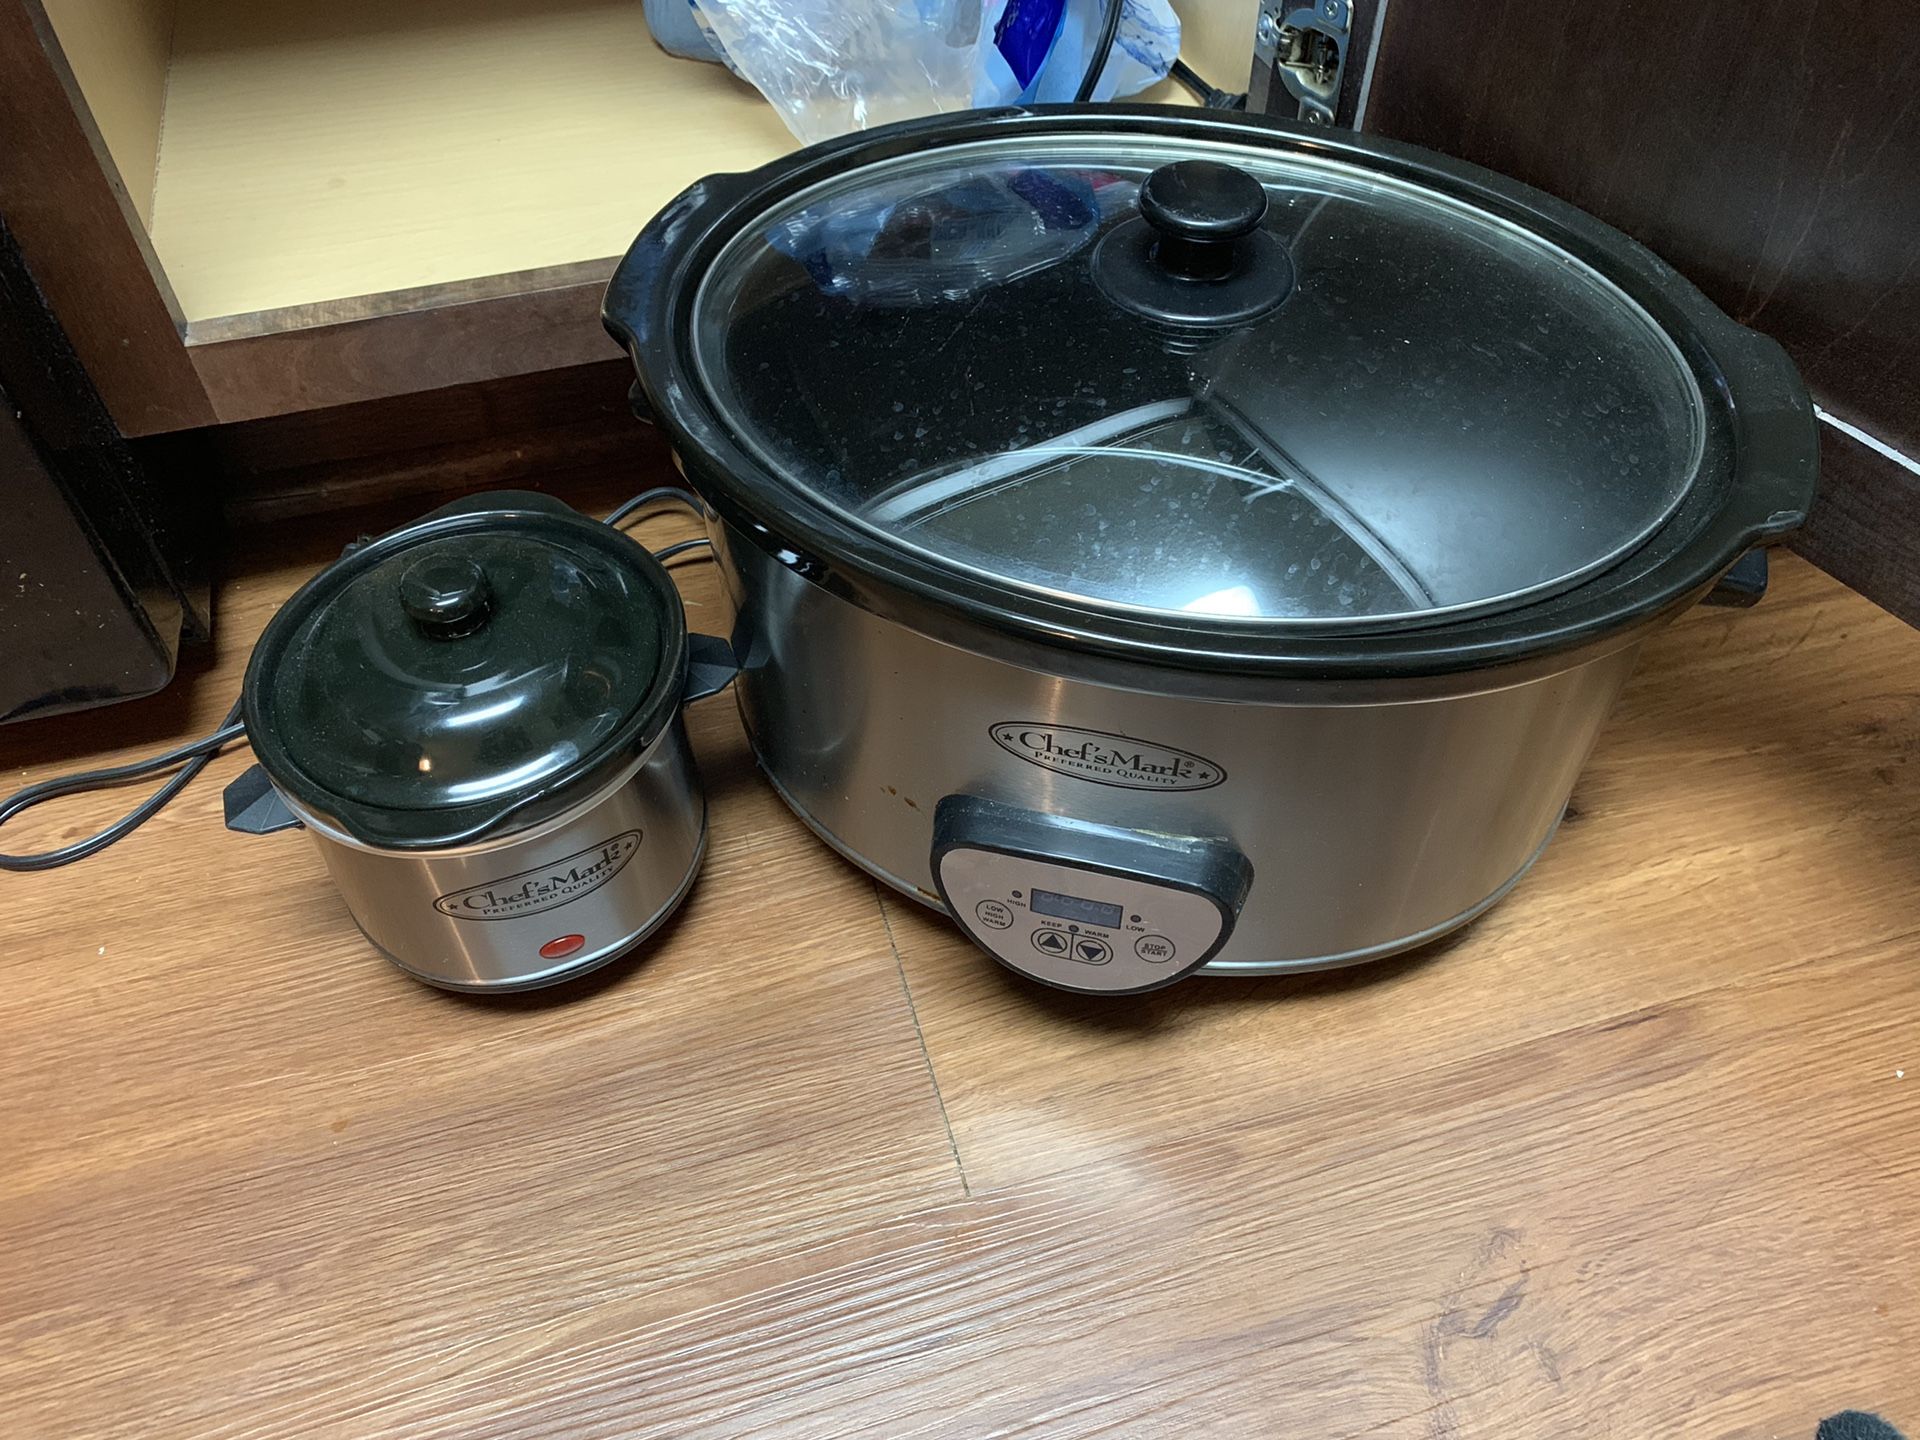 Crockpot with Small Sauce Pot